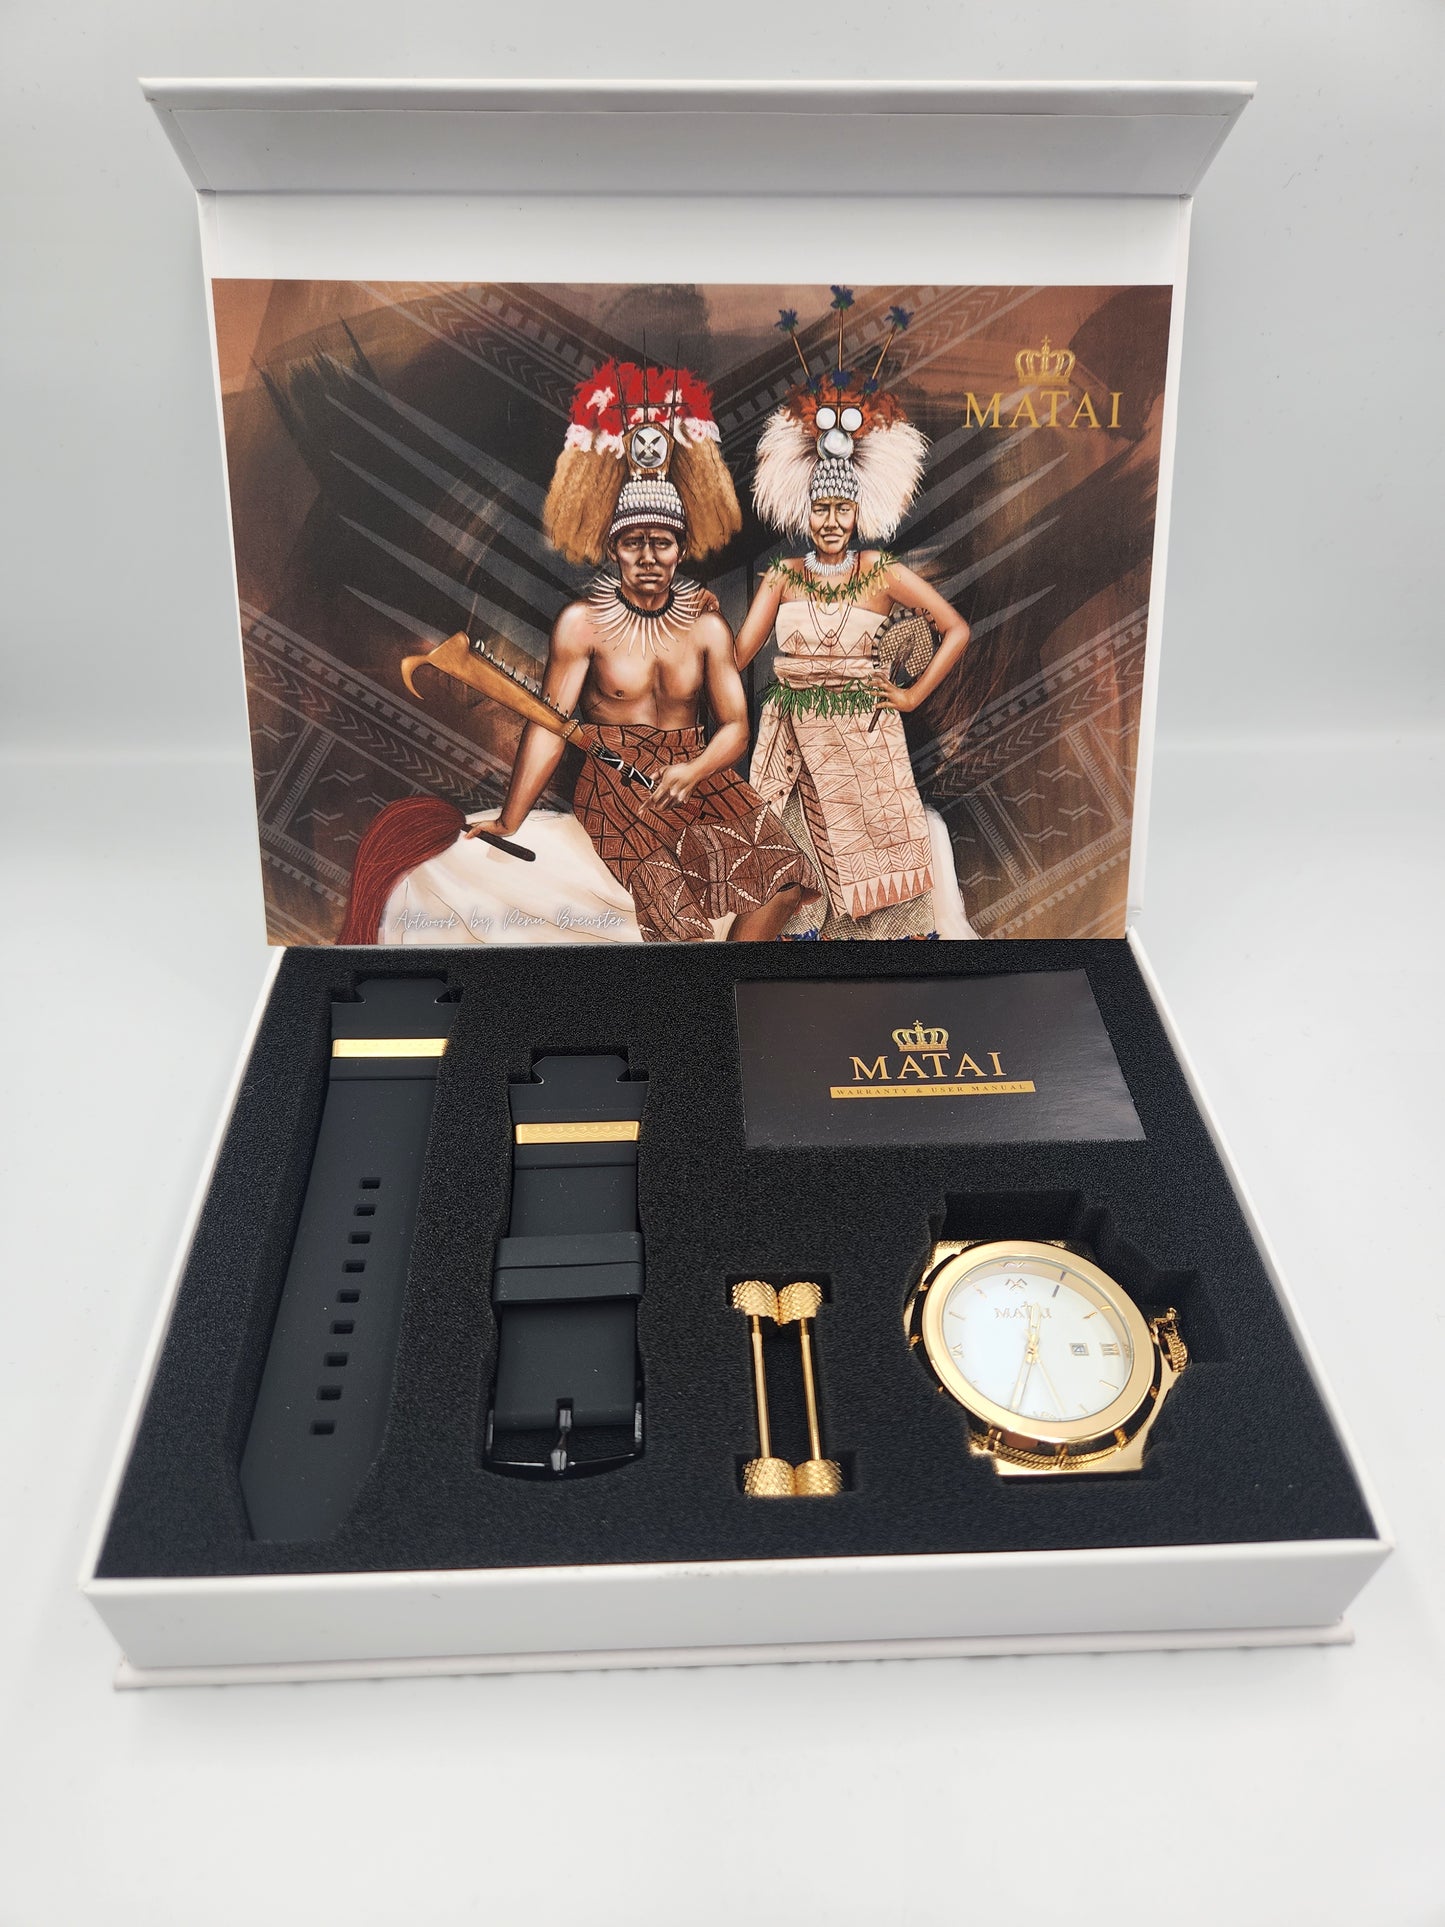 Matai - Gold / White Genesis G3 Watch